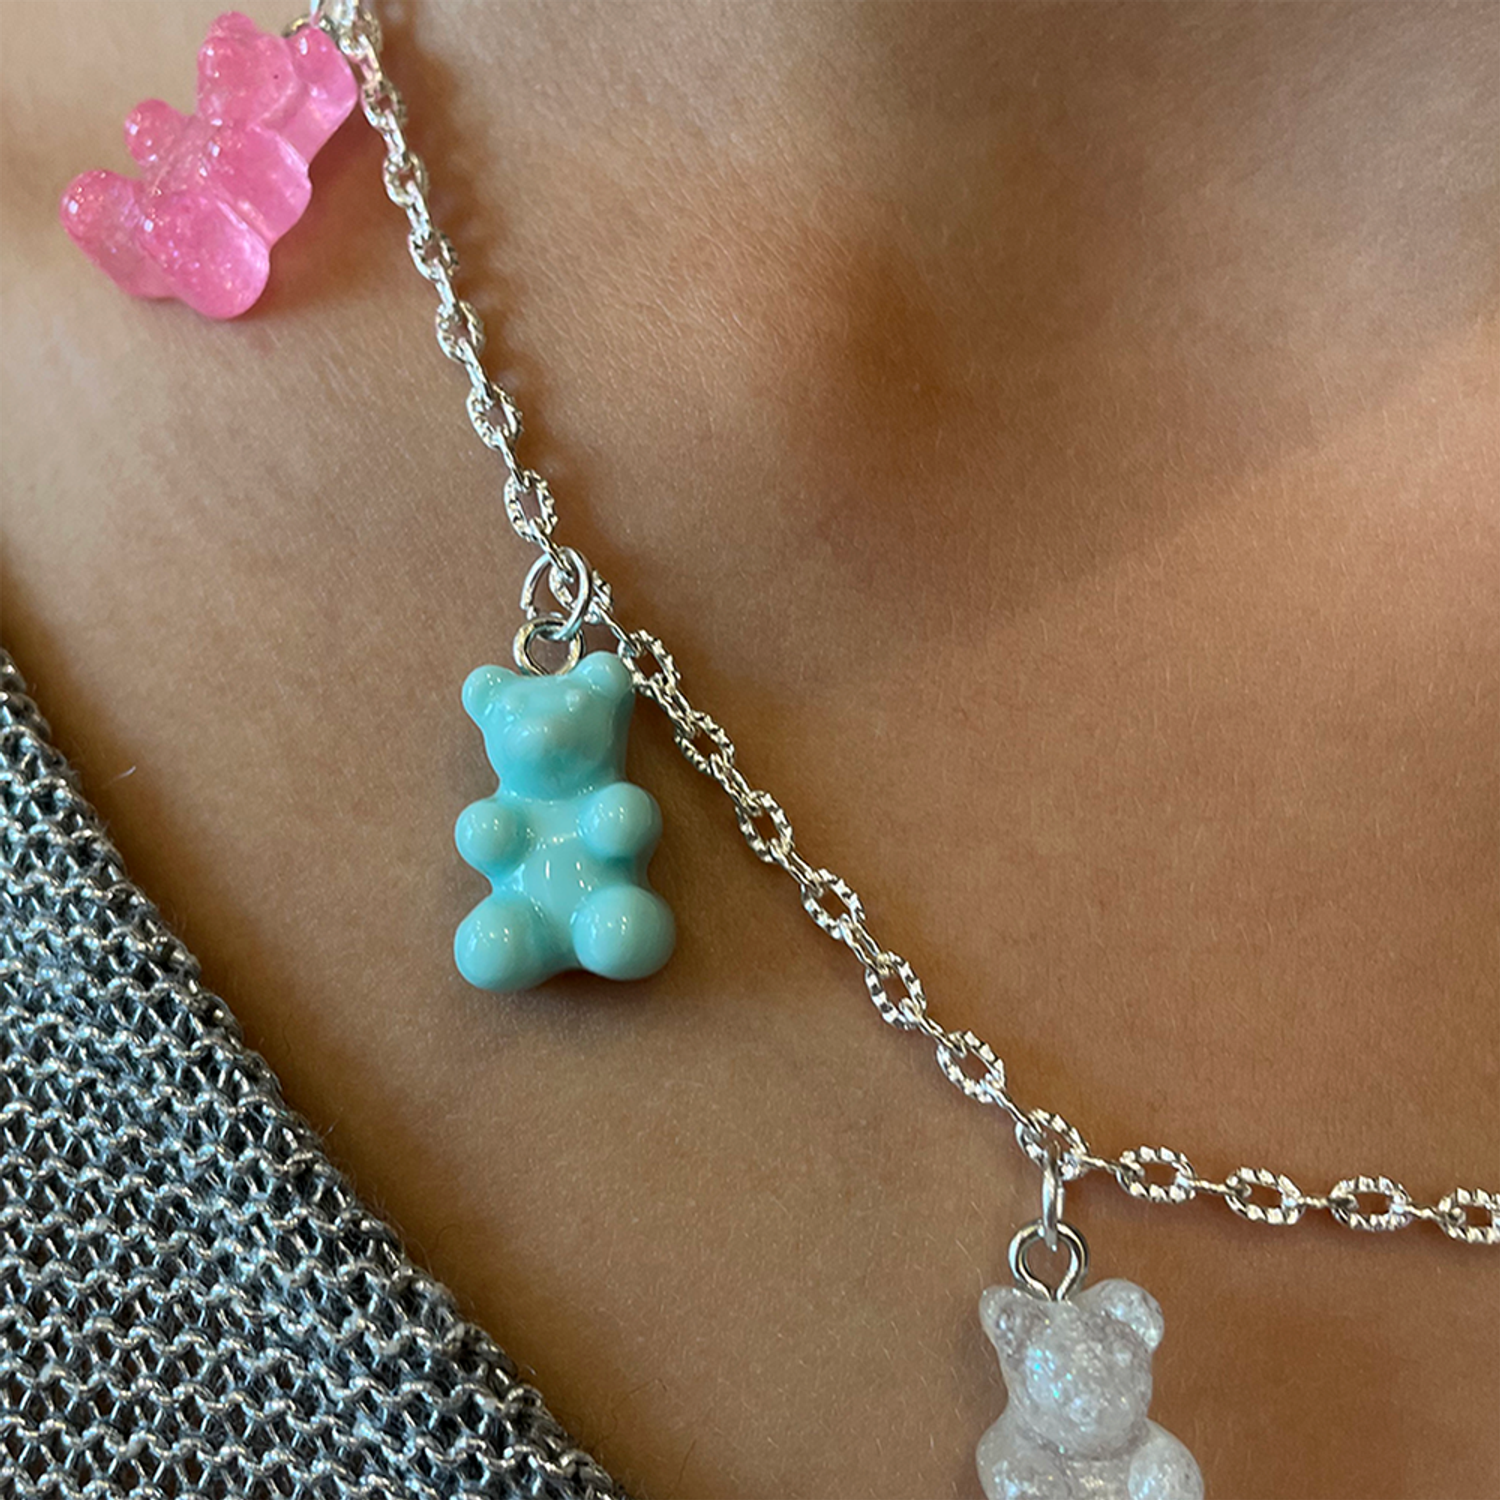 Цепочка на шею с подвеской Леди Бант колье чокер ожерелье бижутерия украшение для девочек с мармеладными мишками Тедди - фото 3